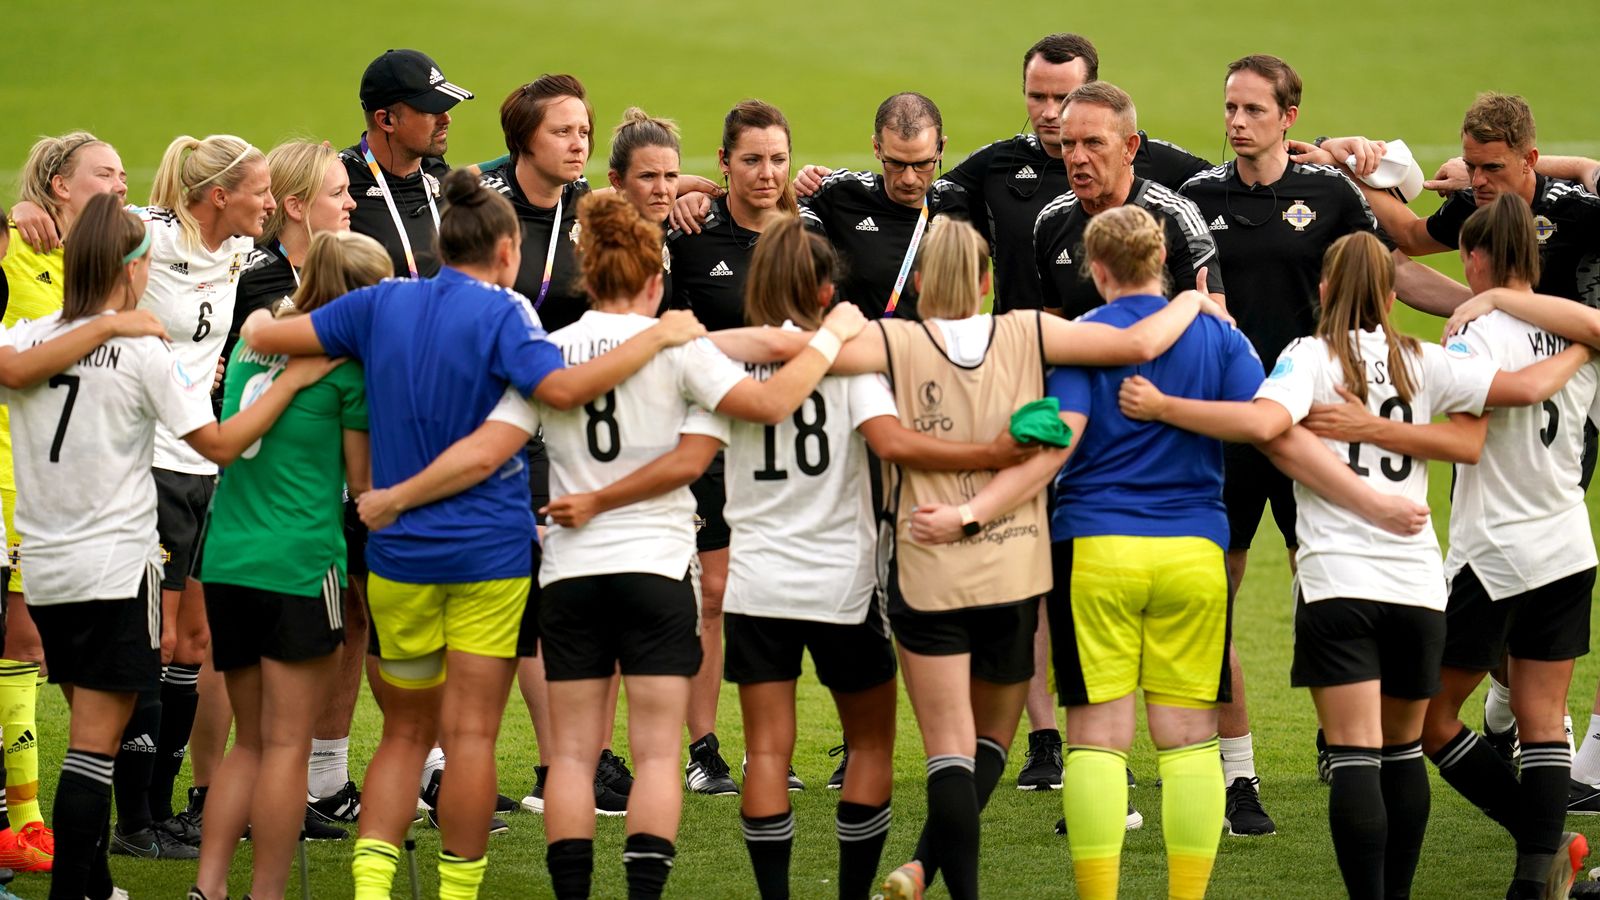 Kenny Shiels: Manager van Noord-Ierland zegt dat zijn team niet klaar is om het op te nemen tegen een topteam na de nederlaag van het EK vrouwen tegen Oostenrijk |  Voetbal Nieuws